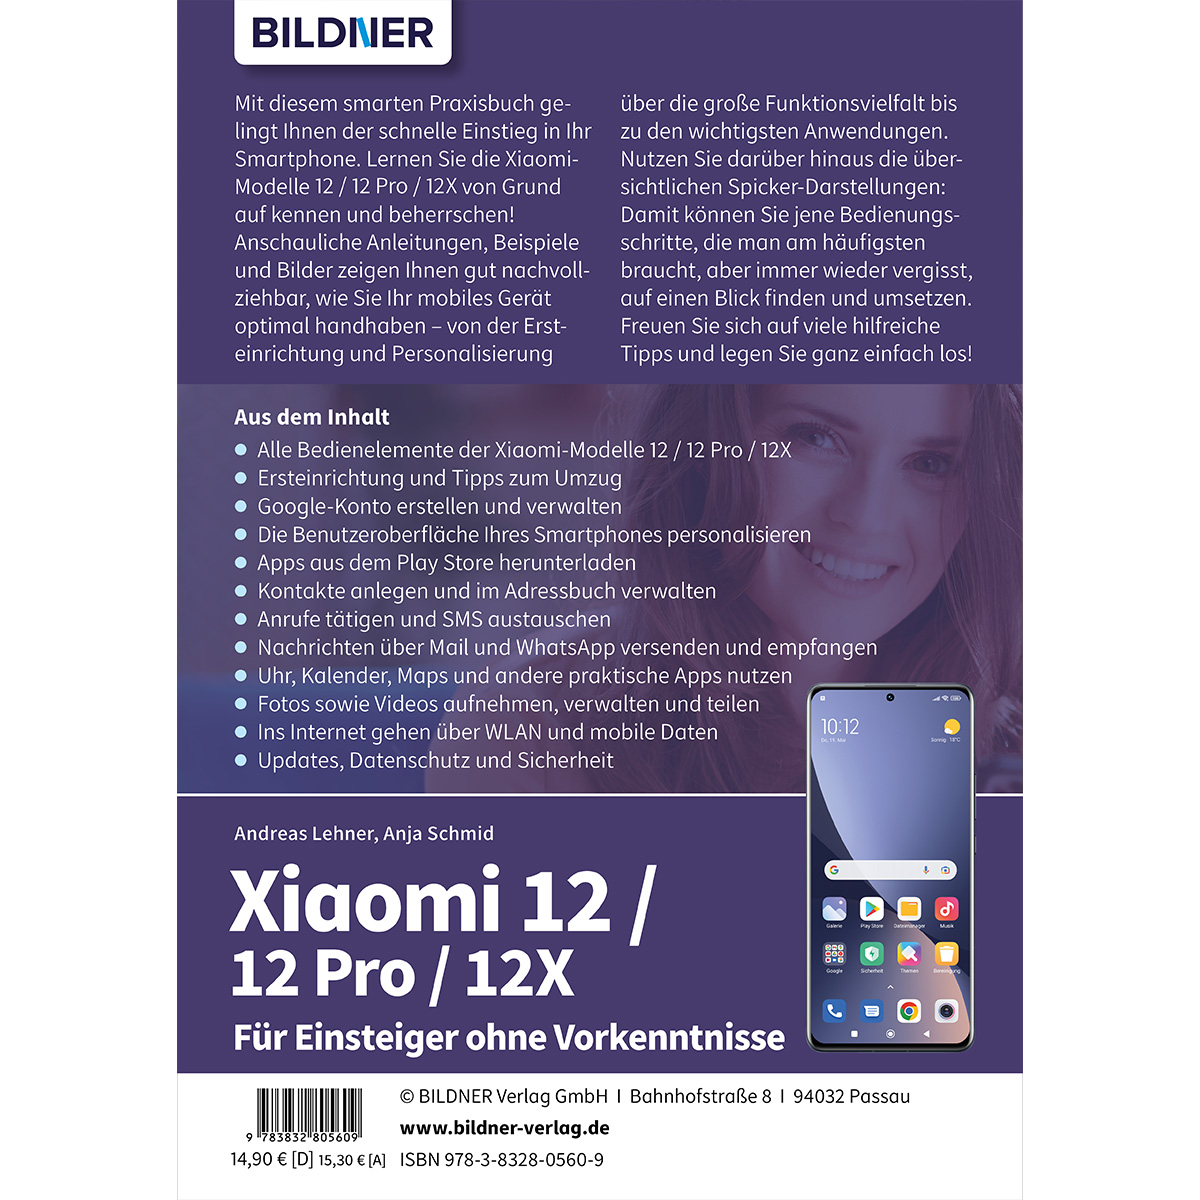 Xiaomi 12 Vorkenntnisse / 12 Pro ohne Einsteiger Für - / 12X 